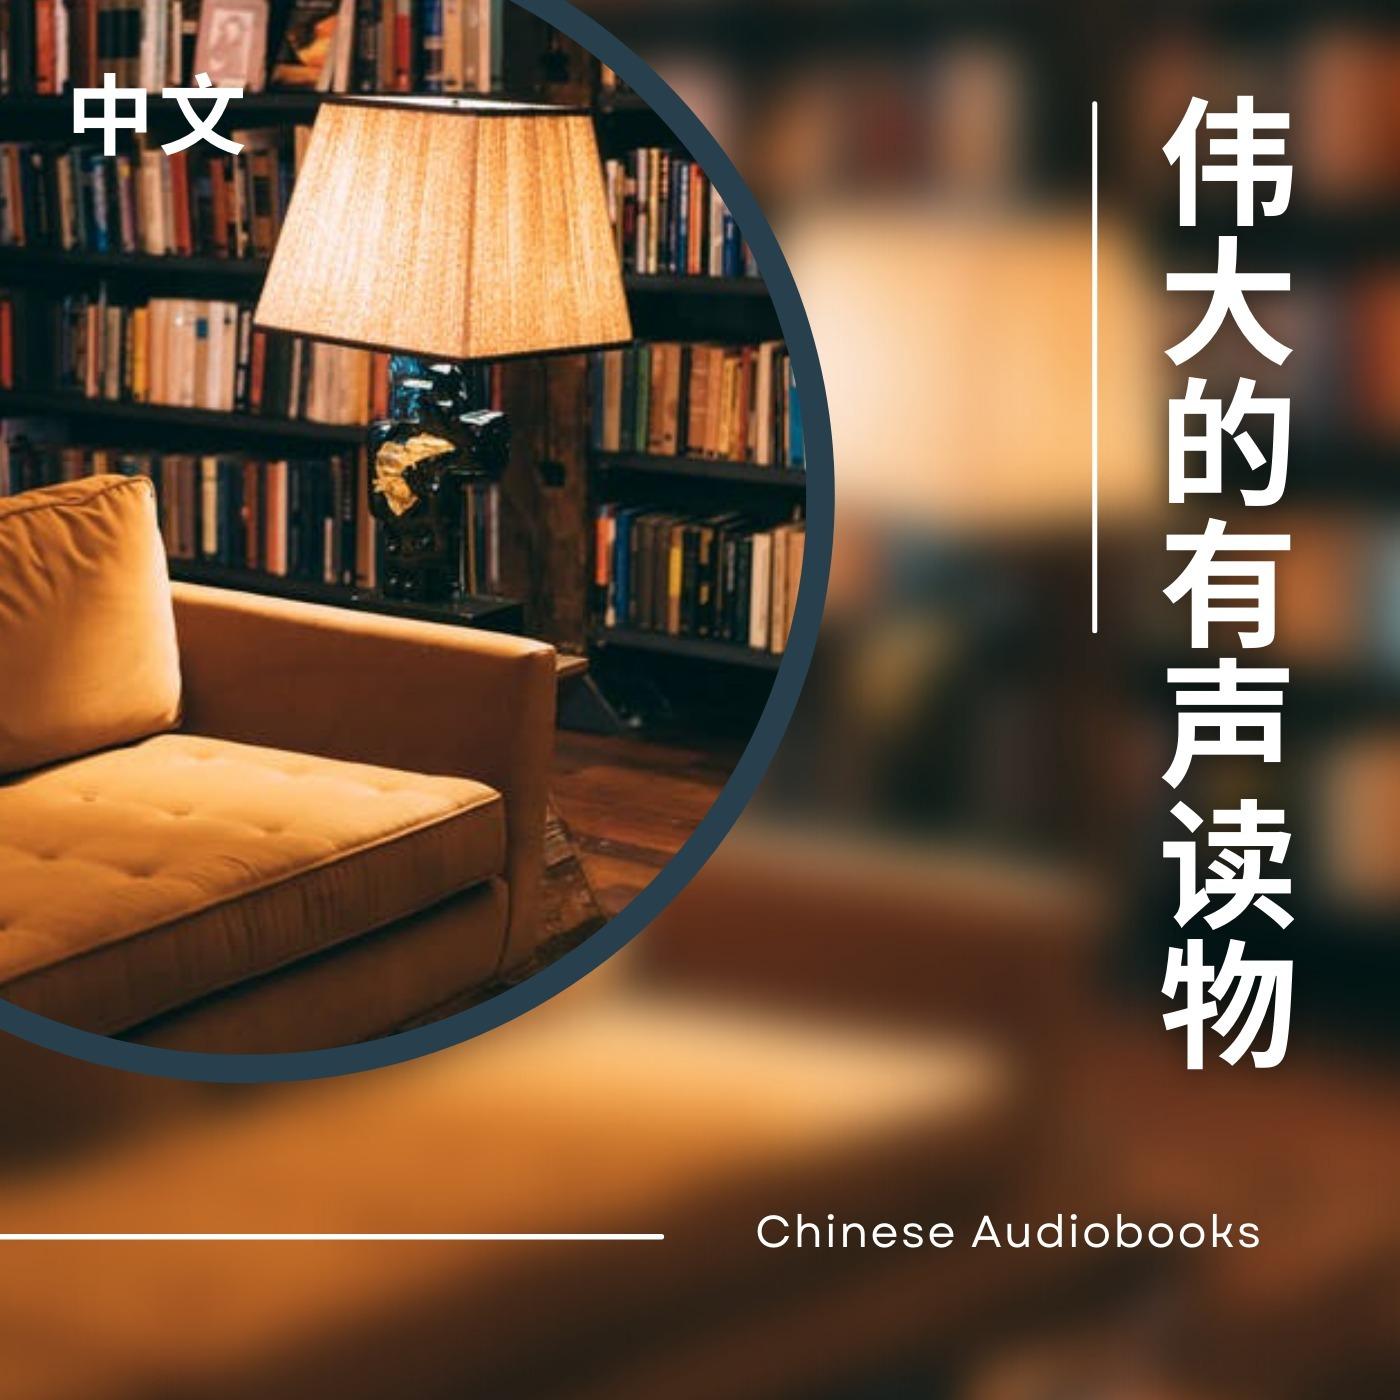 有声读物 - Chinese Audiobooks